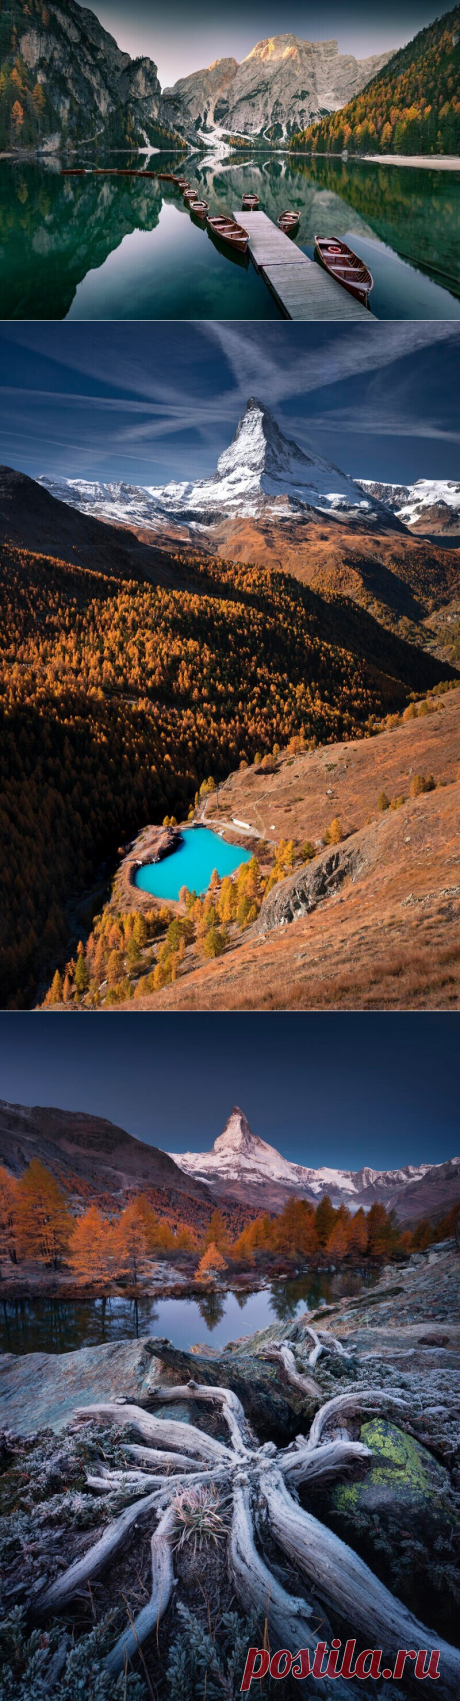 Красивые фото красочной осени в горах (14 фото) &amp;raquo; Картины, художники, фотографы на Nevsepic